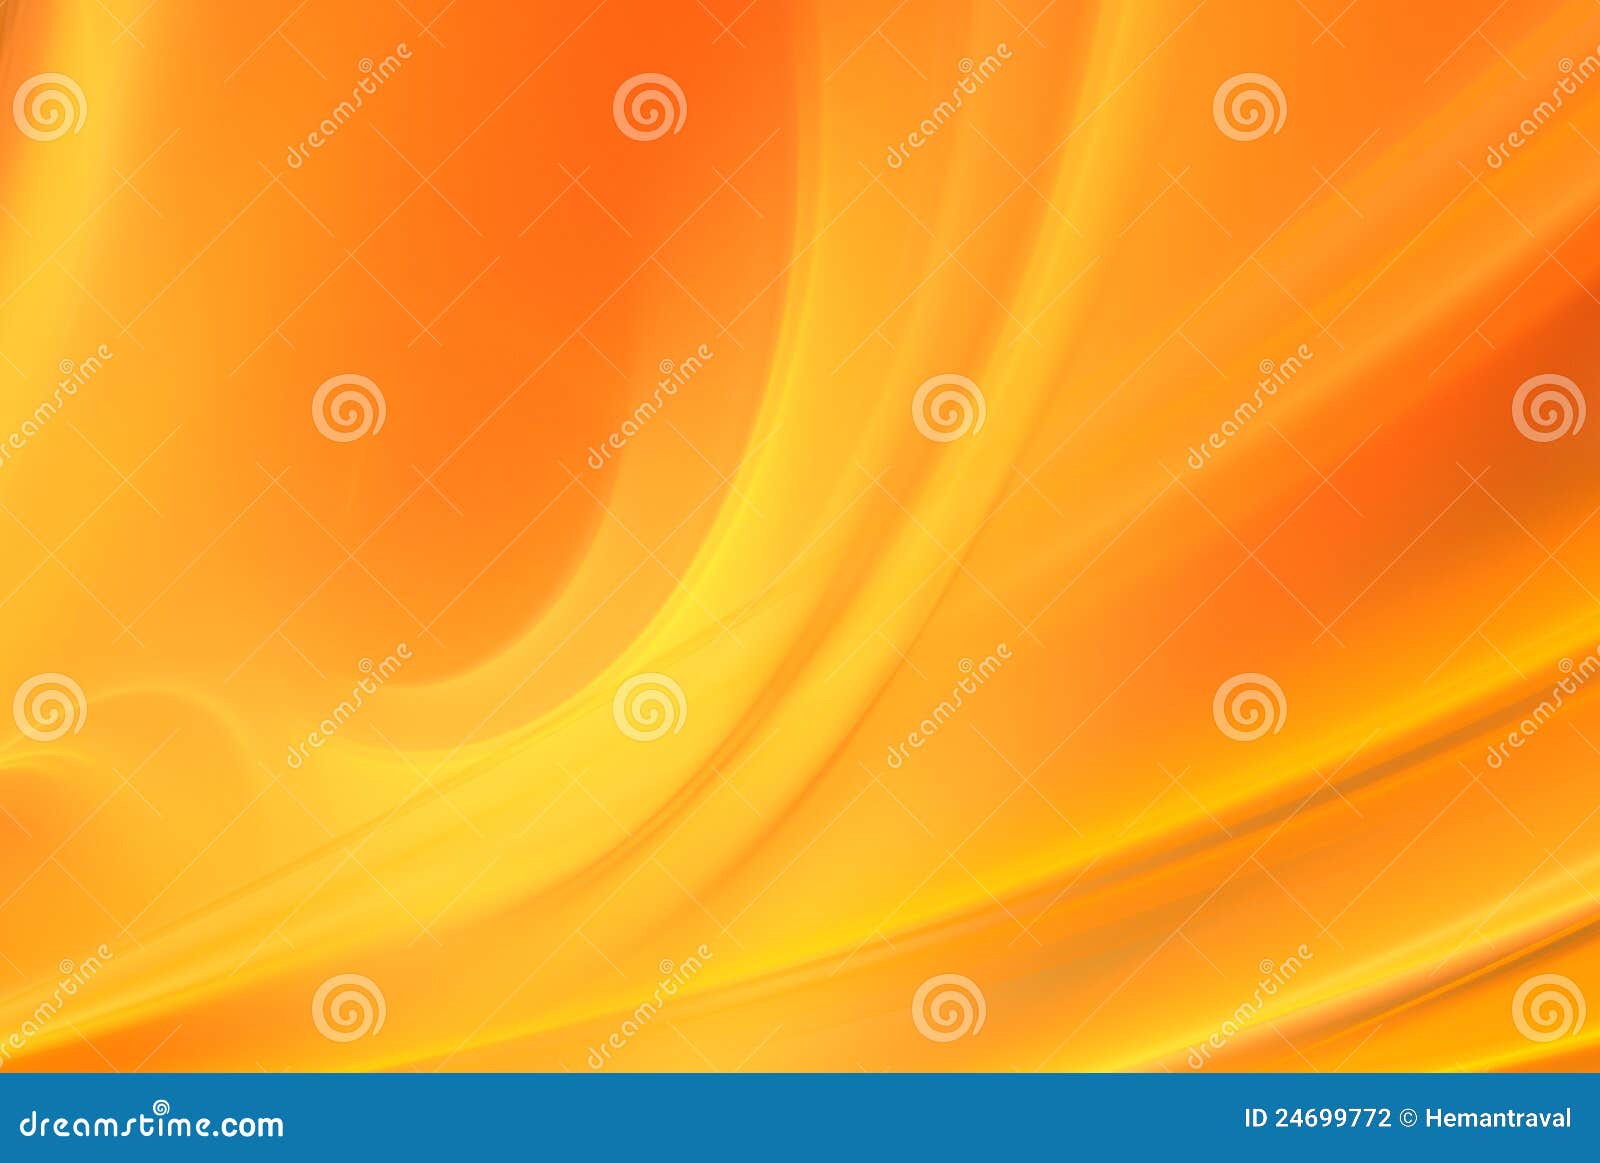 Abstracte Oranje Achtergrond Stock Illustratie - Illustratie bestaande